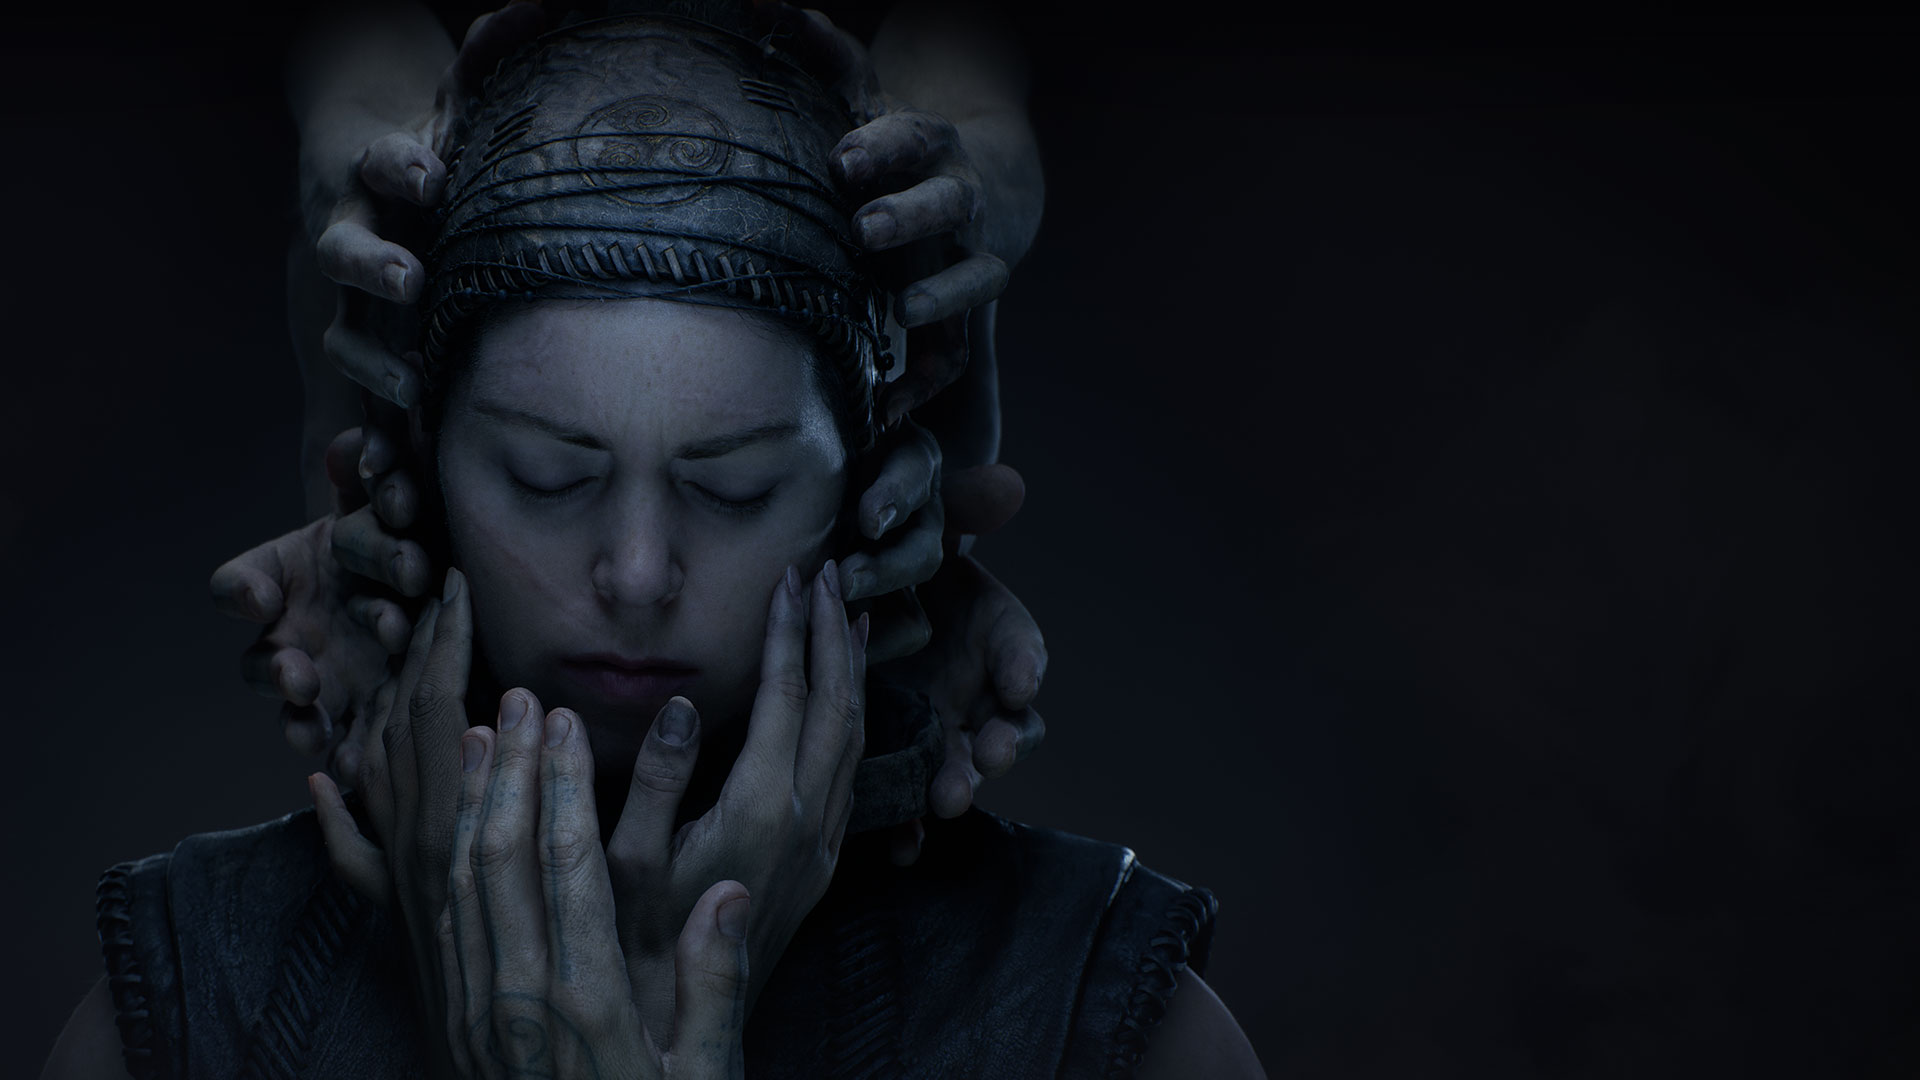 Una mujer con ropa de cuero hecha a mano cierra los ojos en la oscuridad mientras una mano se extiende hacia ella para tocarle la cara.